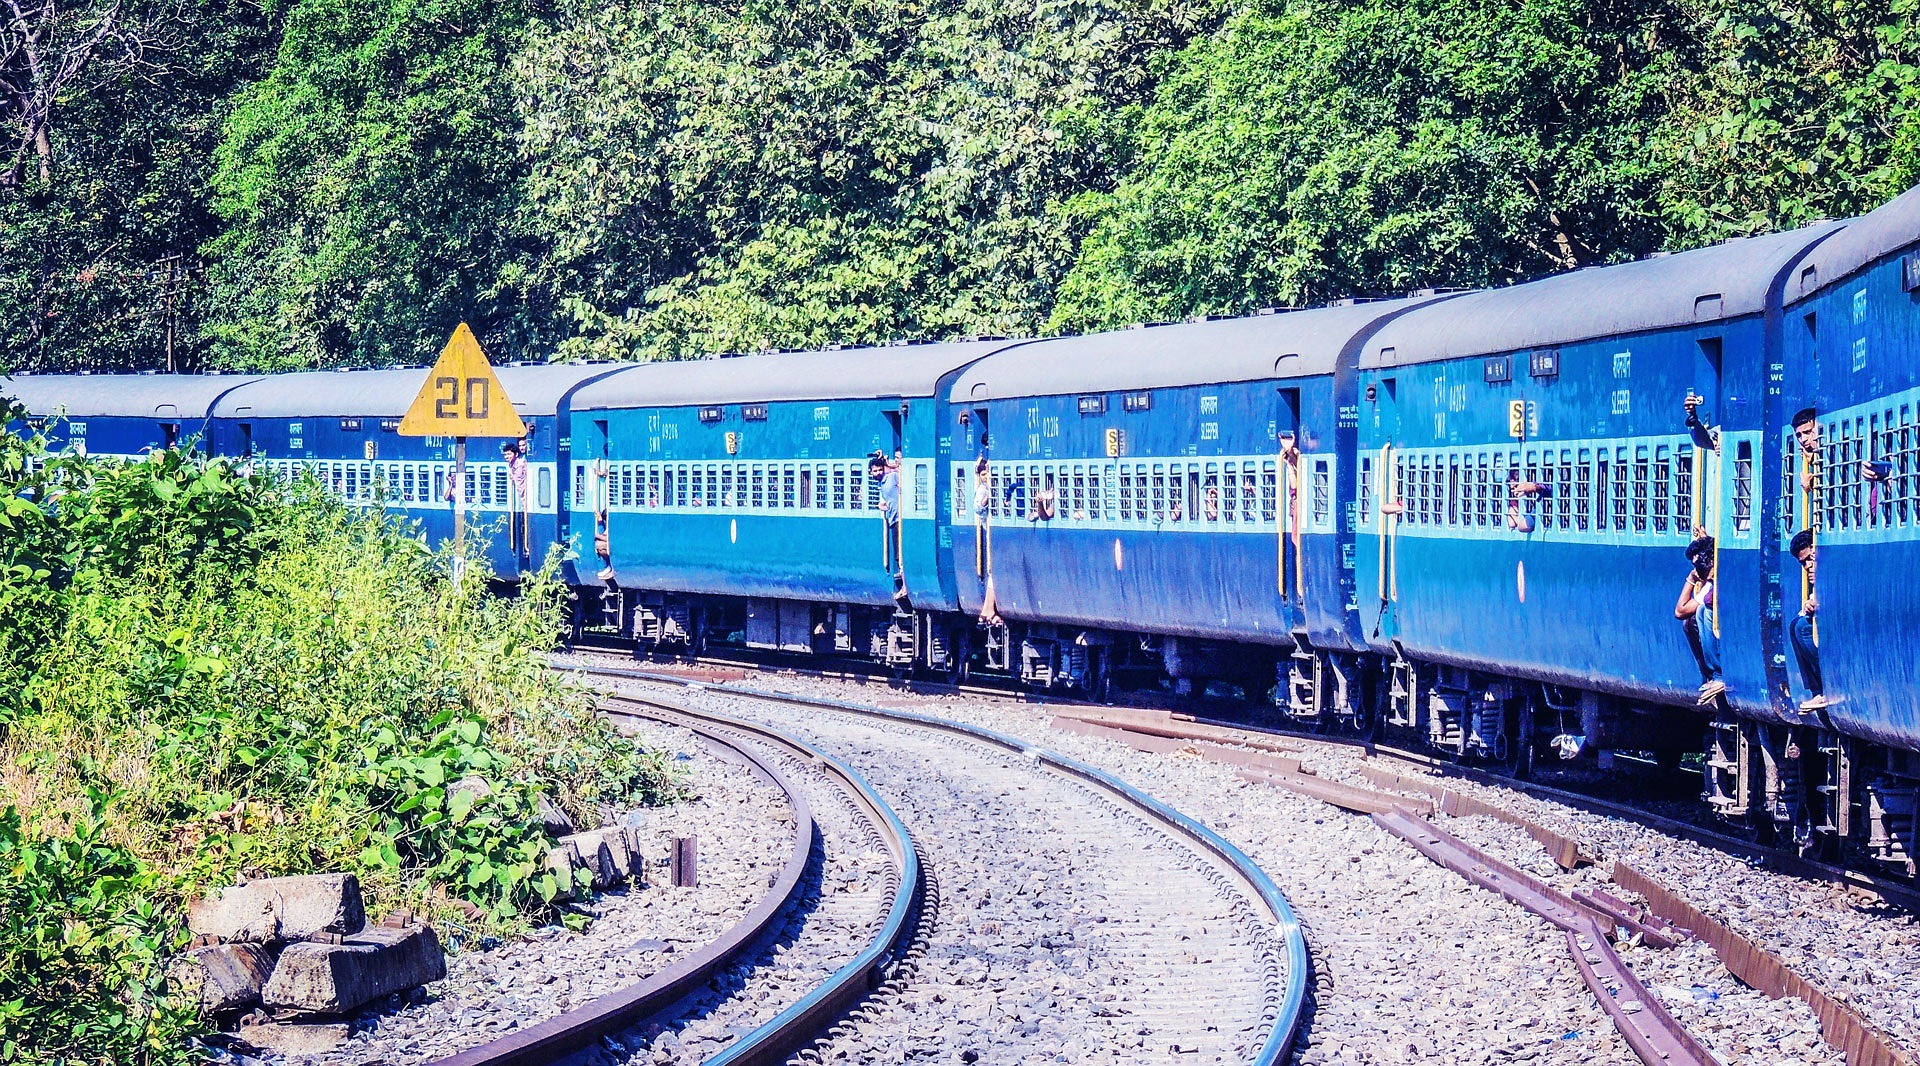 A train in India.